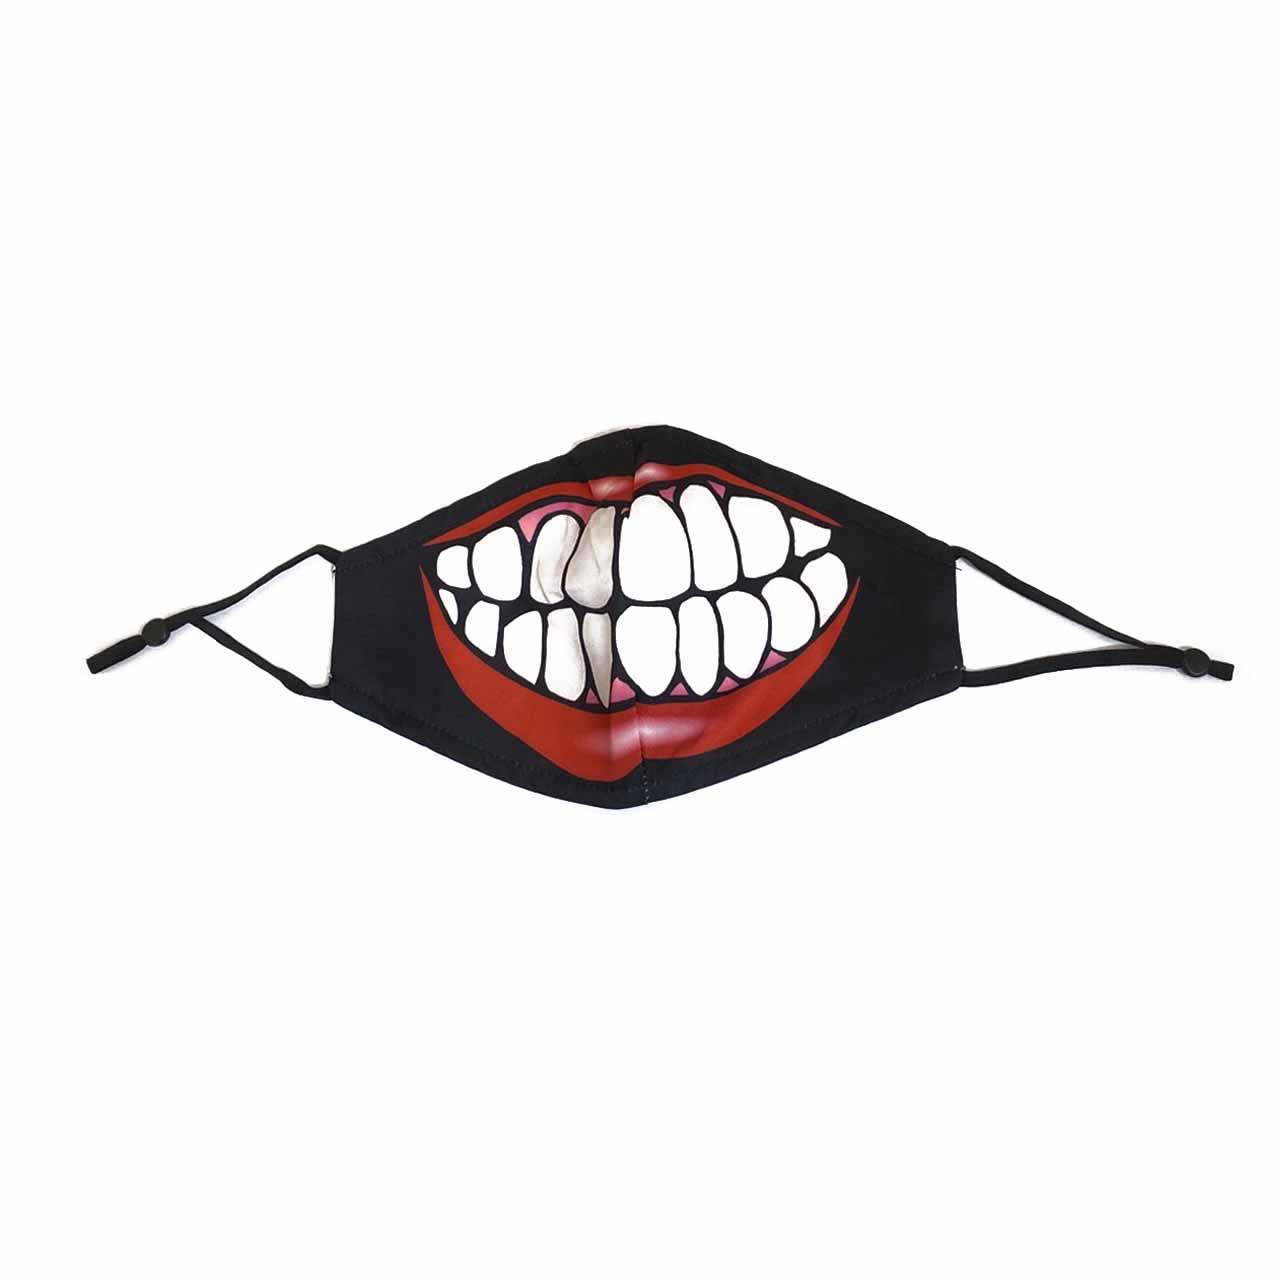 印花成人口罩-紅唇齒白(衛生用品，恕不退貨，無法接受者勿下單)